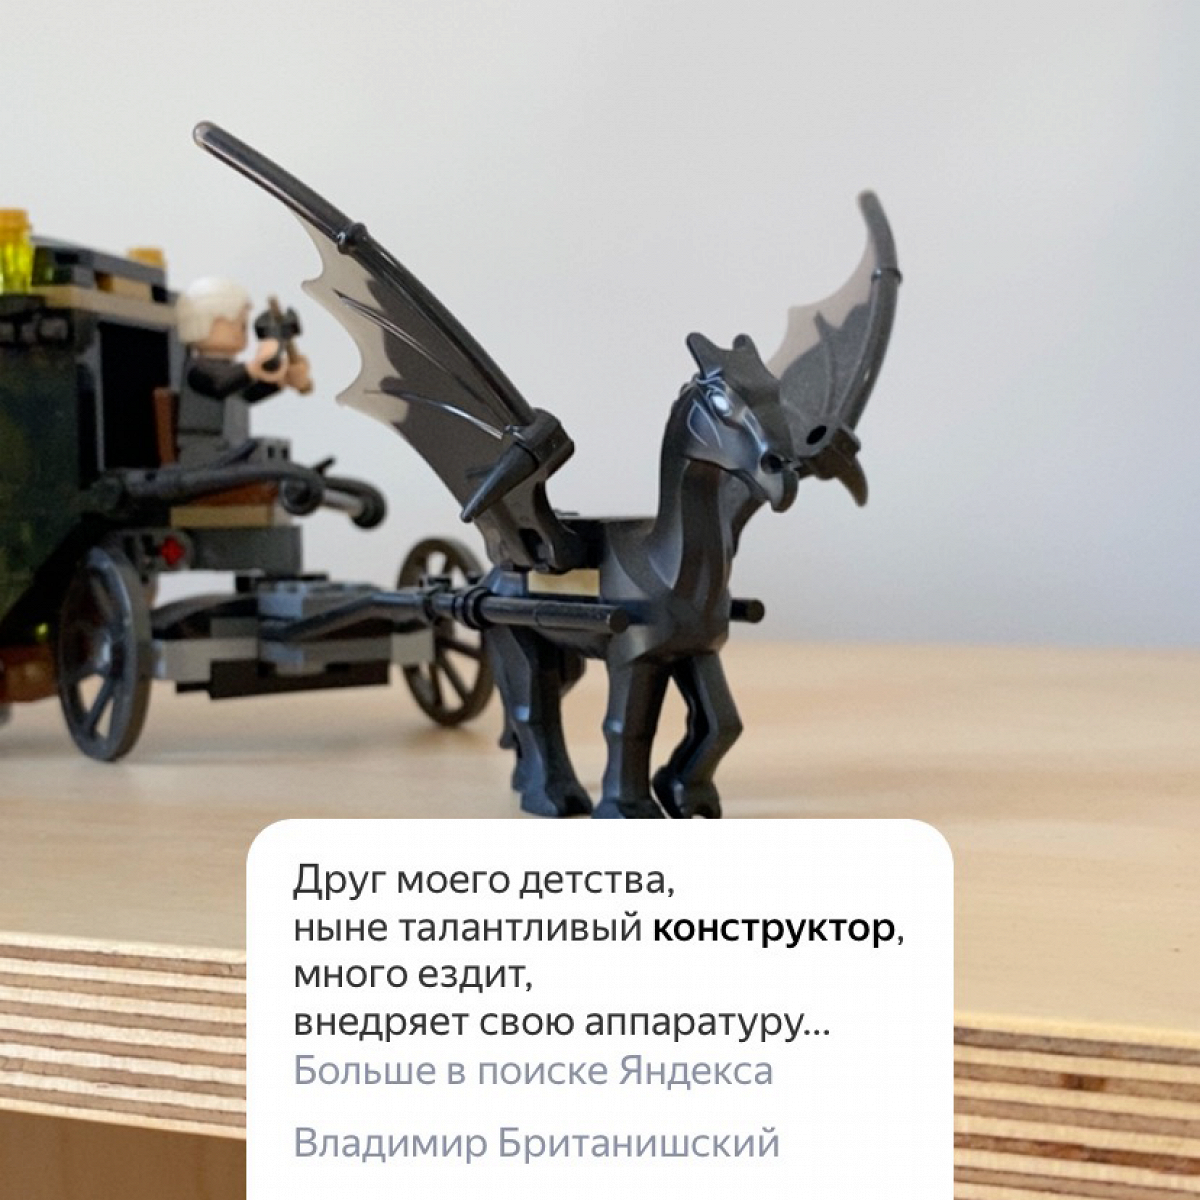 «Яндекс» теперь видит поэзию в каждом предмете. Вот что нашли мы в редакции «Афиши Daily»